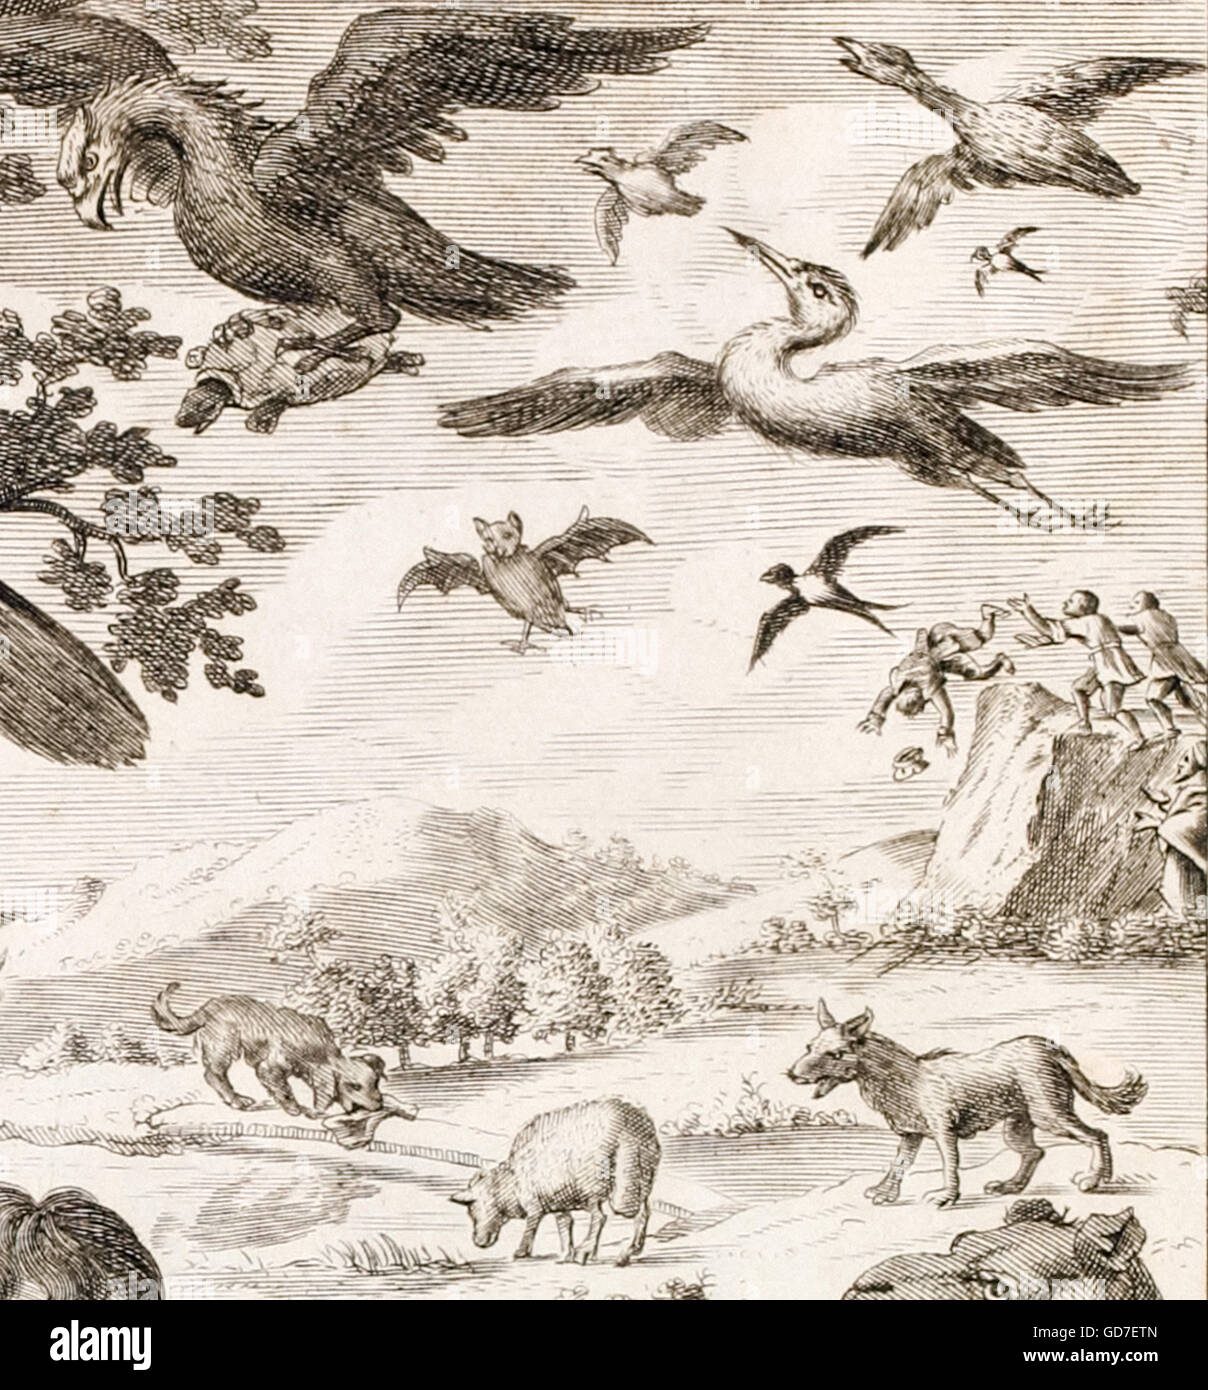 Detail mit dem Tod von Aesop aus einem das Frontispiz des "Fabeln des Aesop und andere bedeutende Mythologen" von Sir Roger L'Estrange (1616-1704) Erstveröffentlichung im Jahre 1692. Siehe Beschreibung für mehr Informationen. Stockfoto